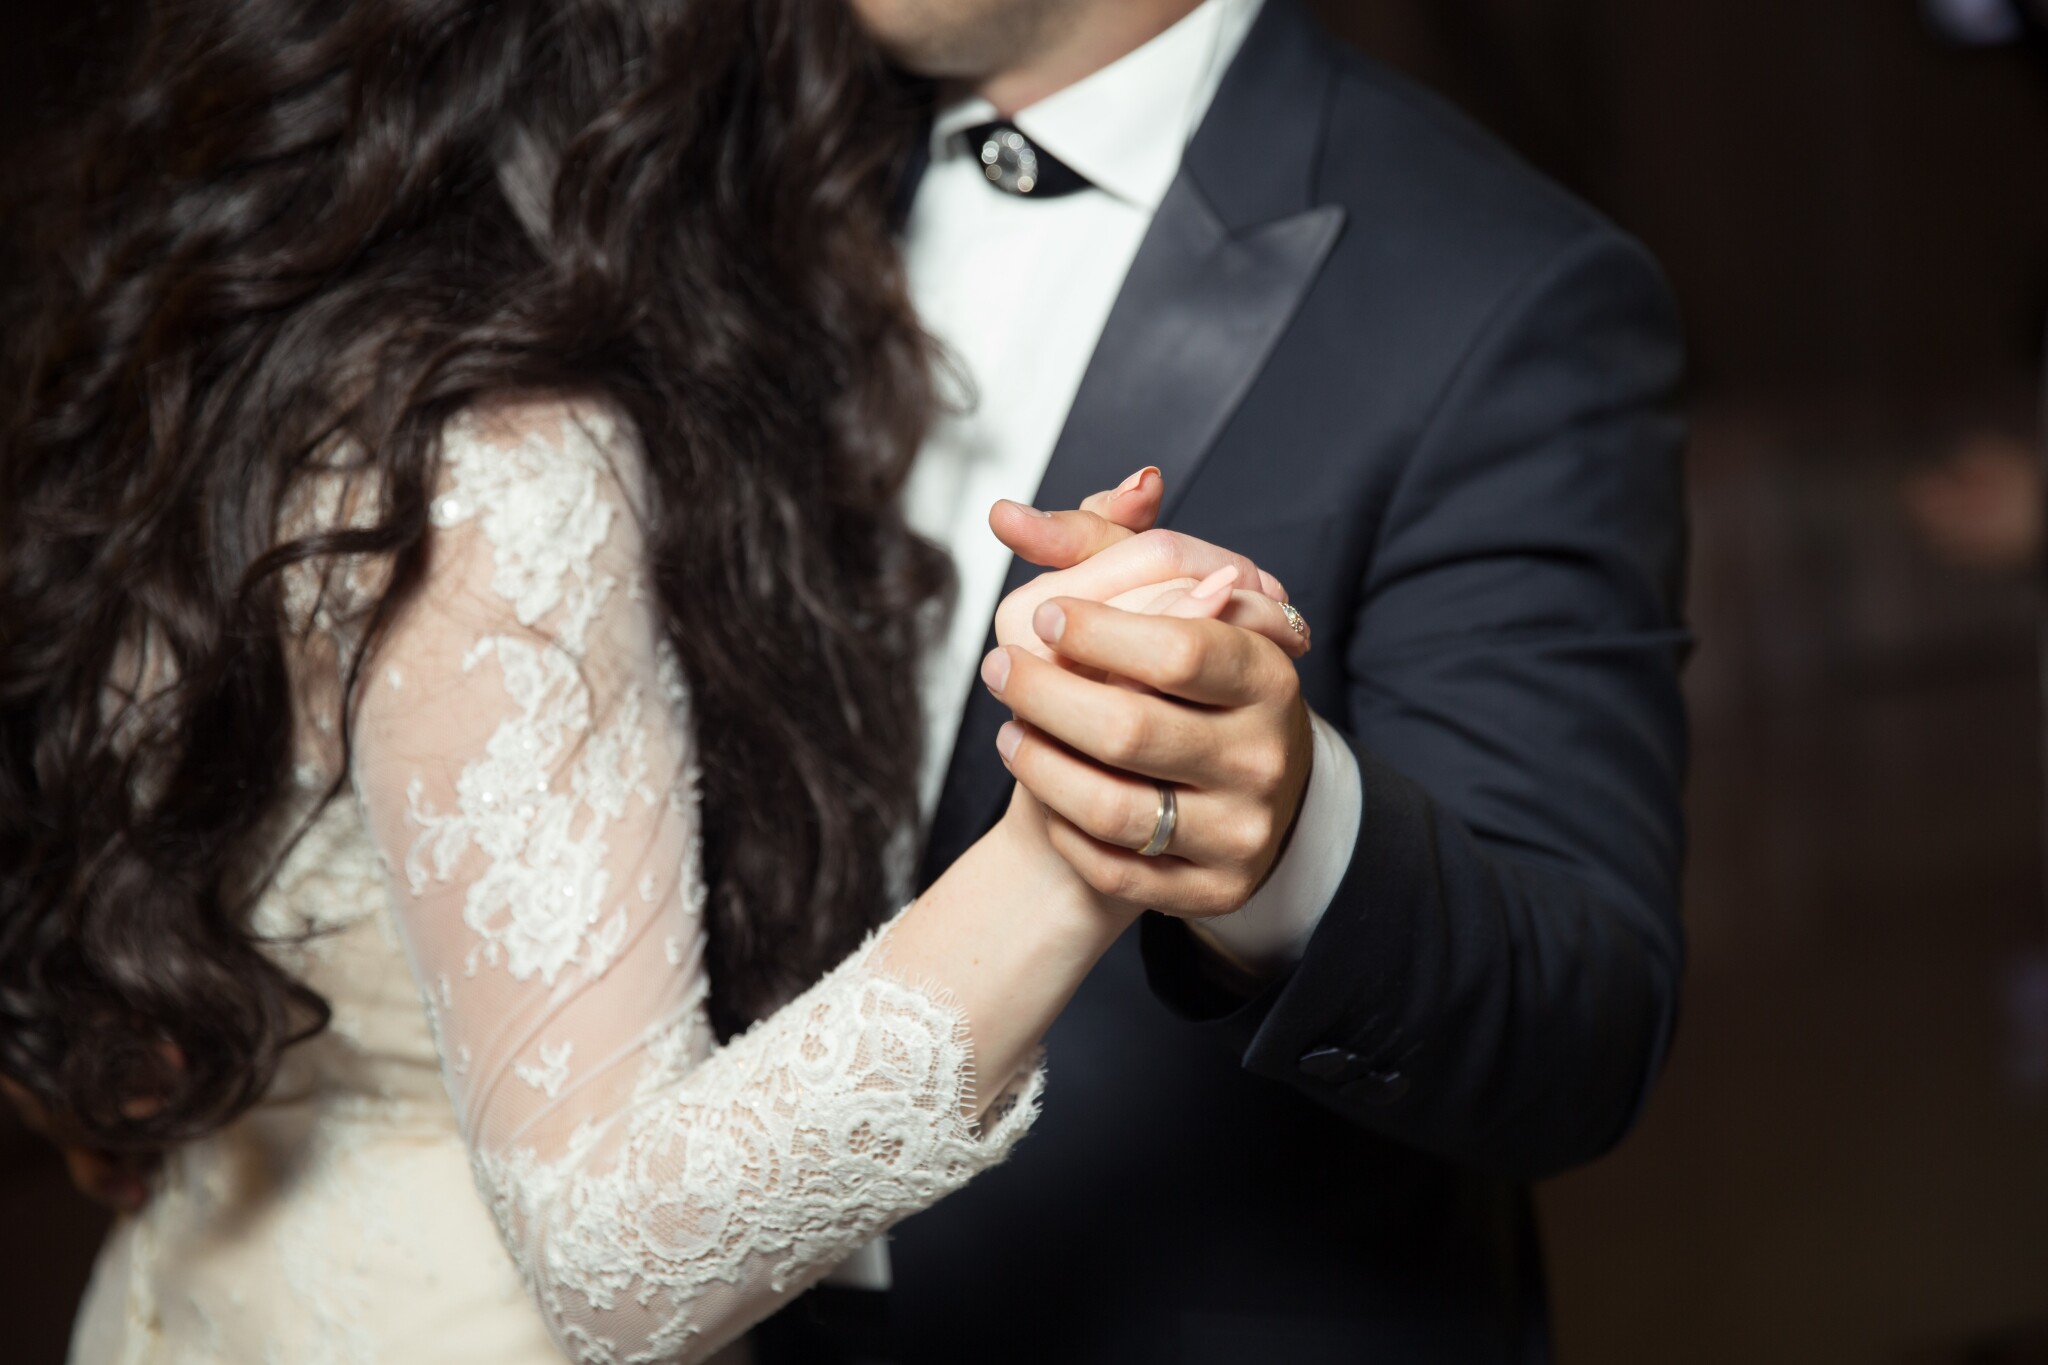 Únorové dvojky nahrávají svatebnímu byznysu. Neatraktivní měsíc mění na žádaný